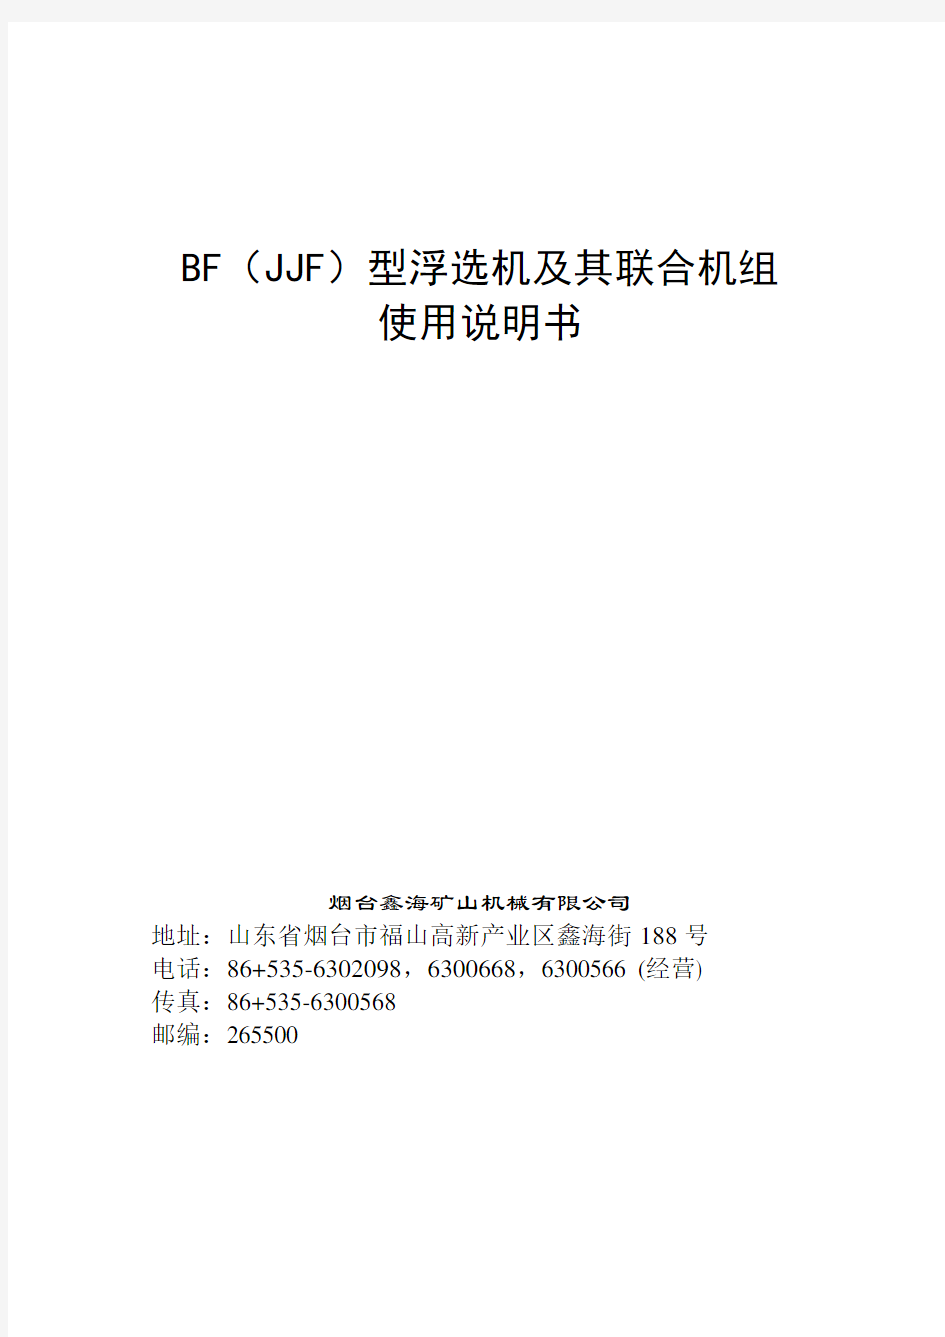 BF-JJF型浮选机使用说明书